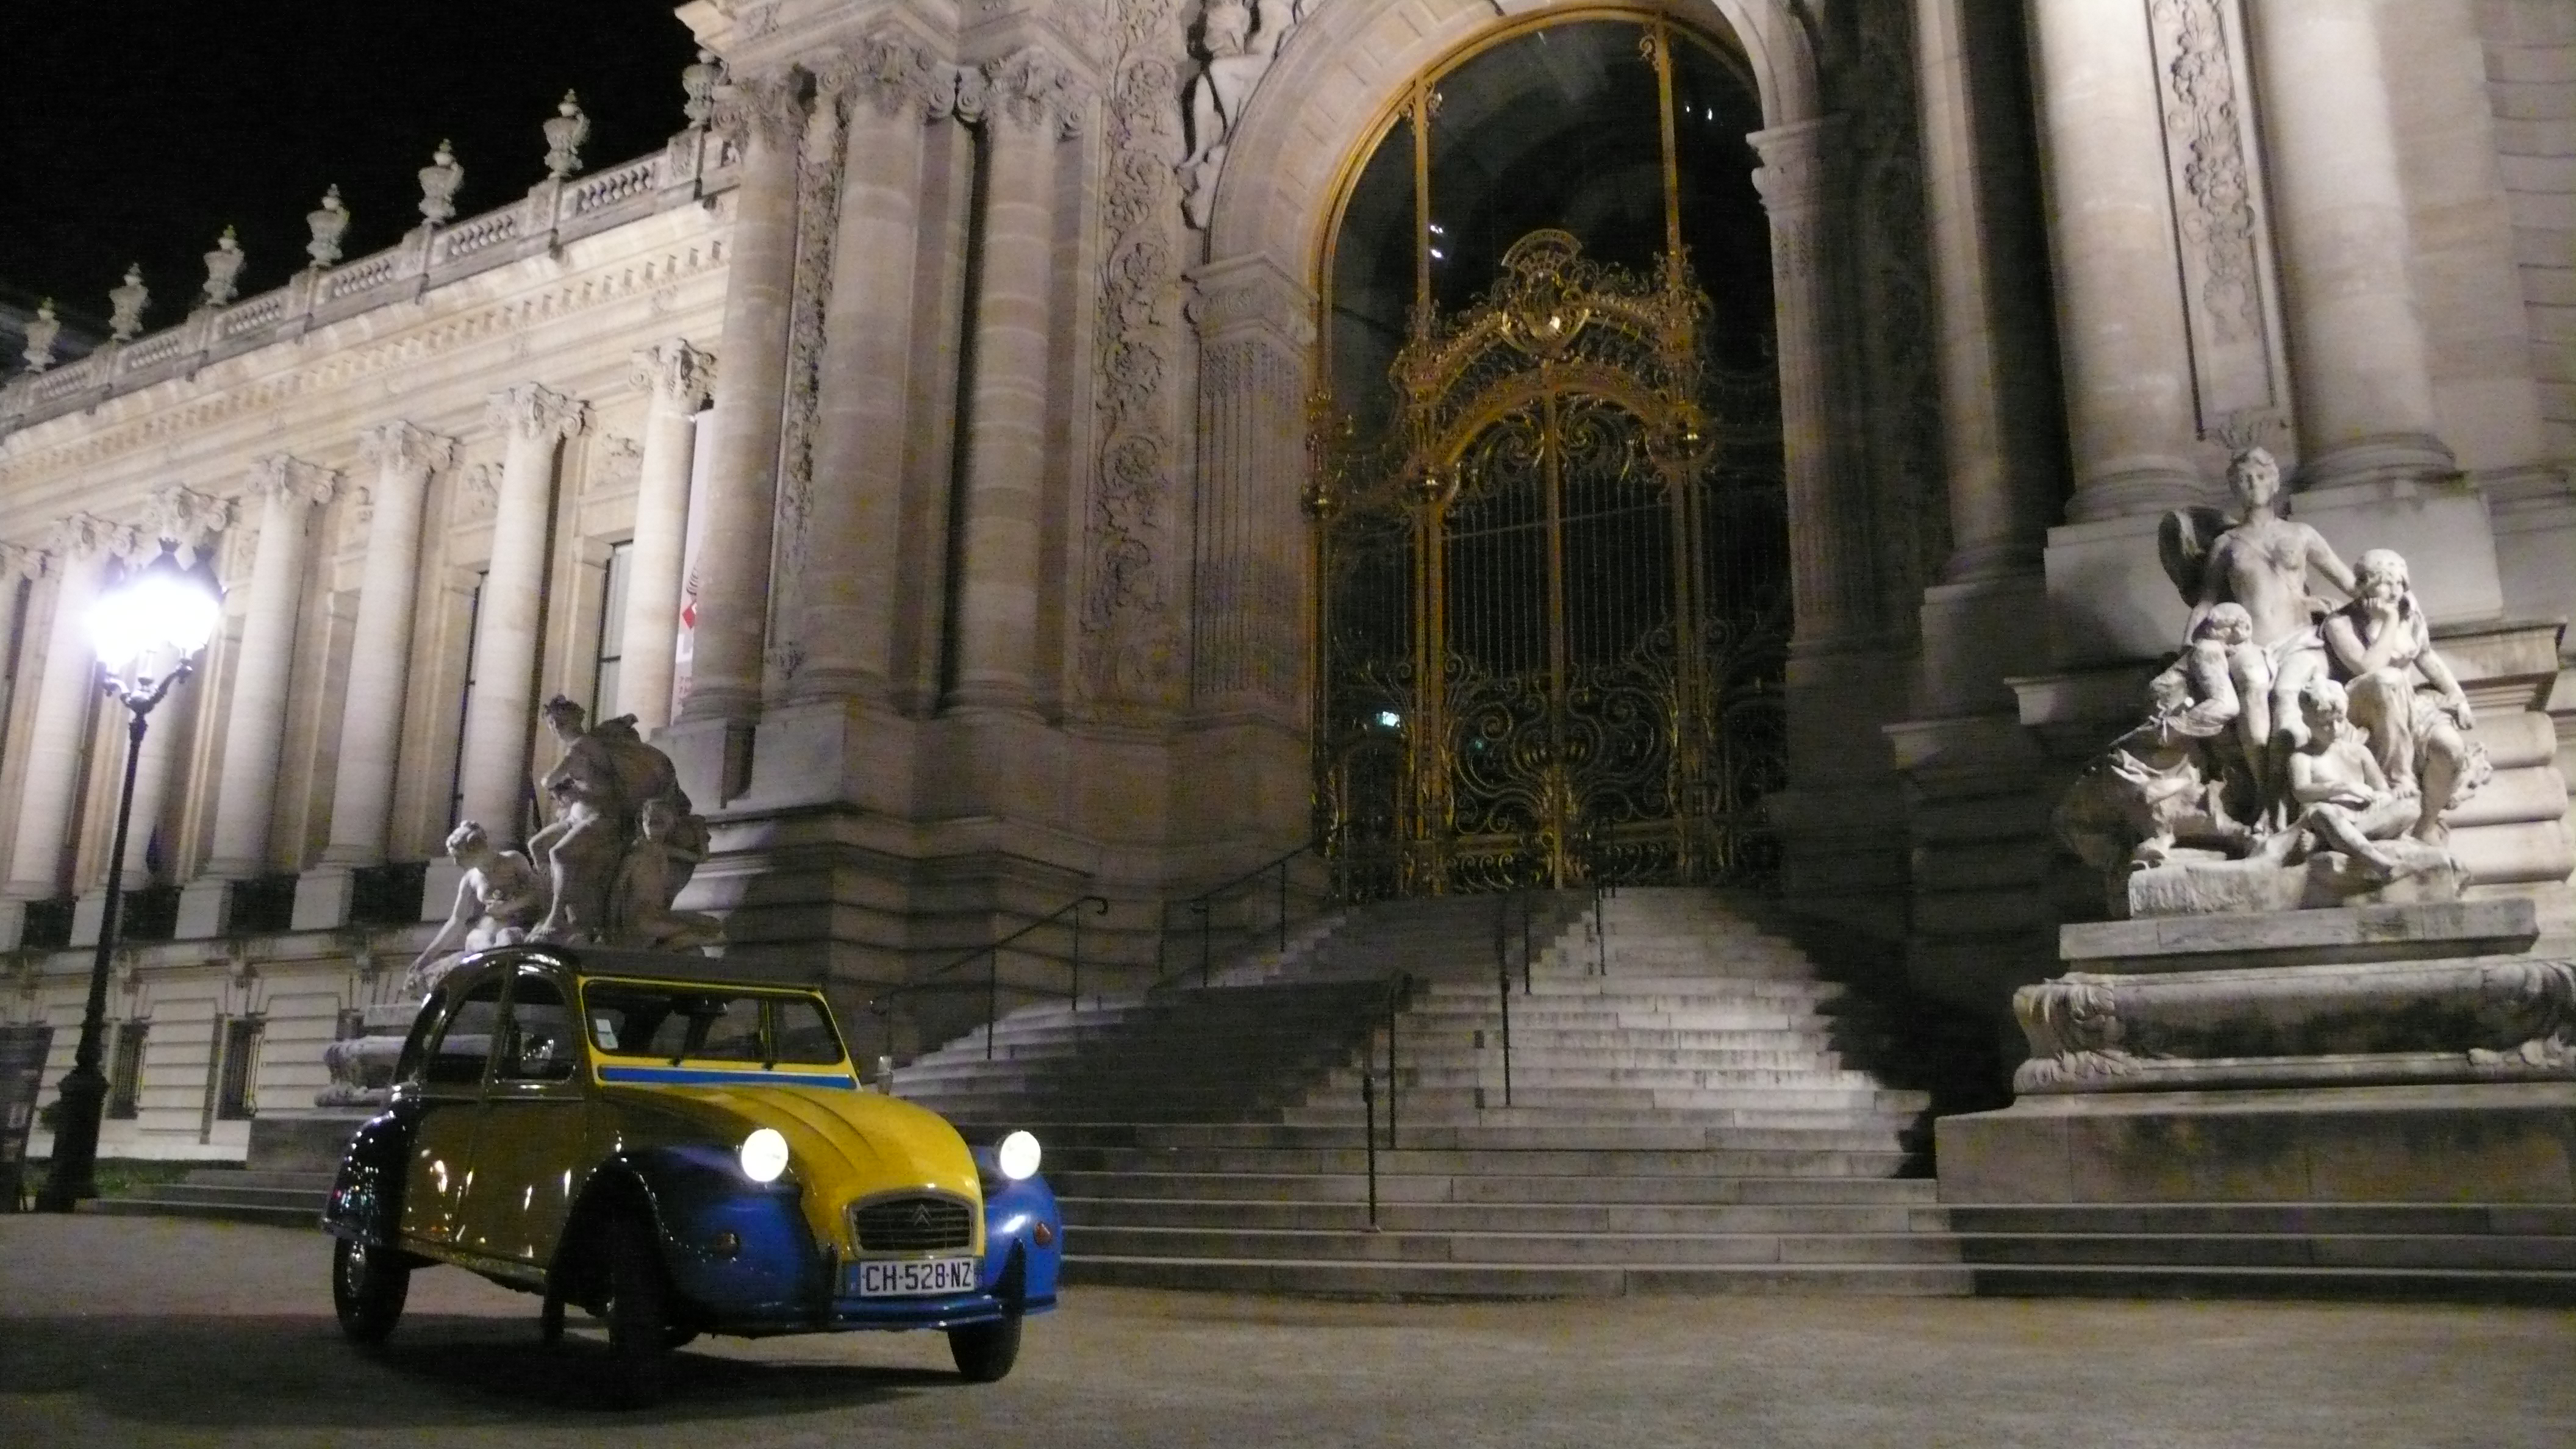 2CVParisTour : Visitez Paris en 2CV! Le Petit Palais de nuit